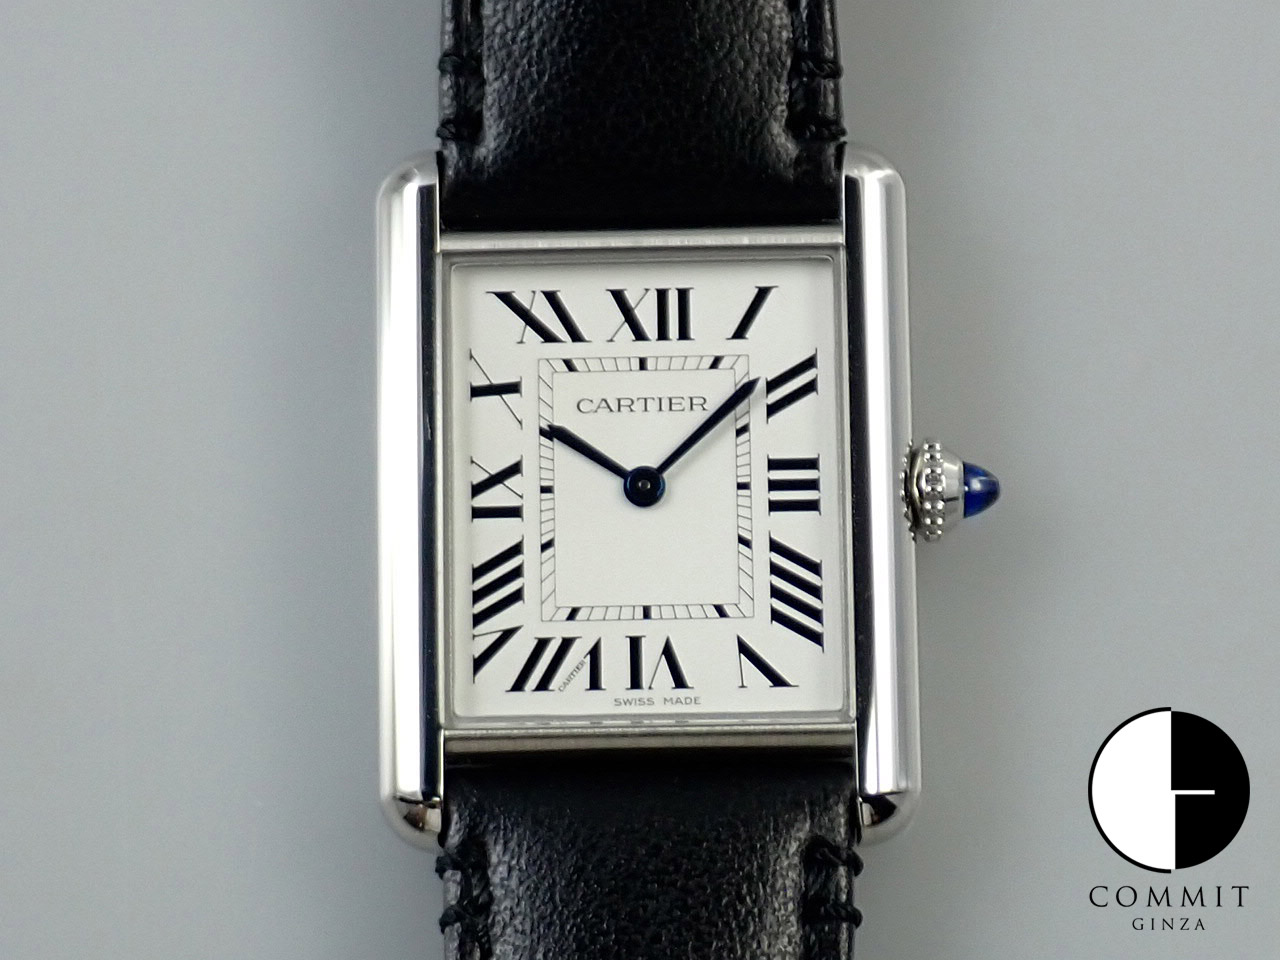 カルティエ 新品・未使用品・中古品 販売腕時計一覧 | コミット銀座